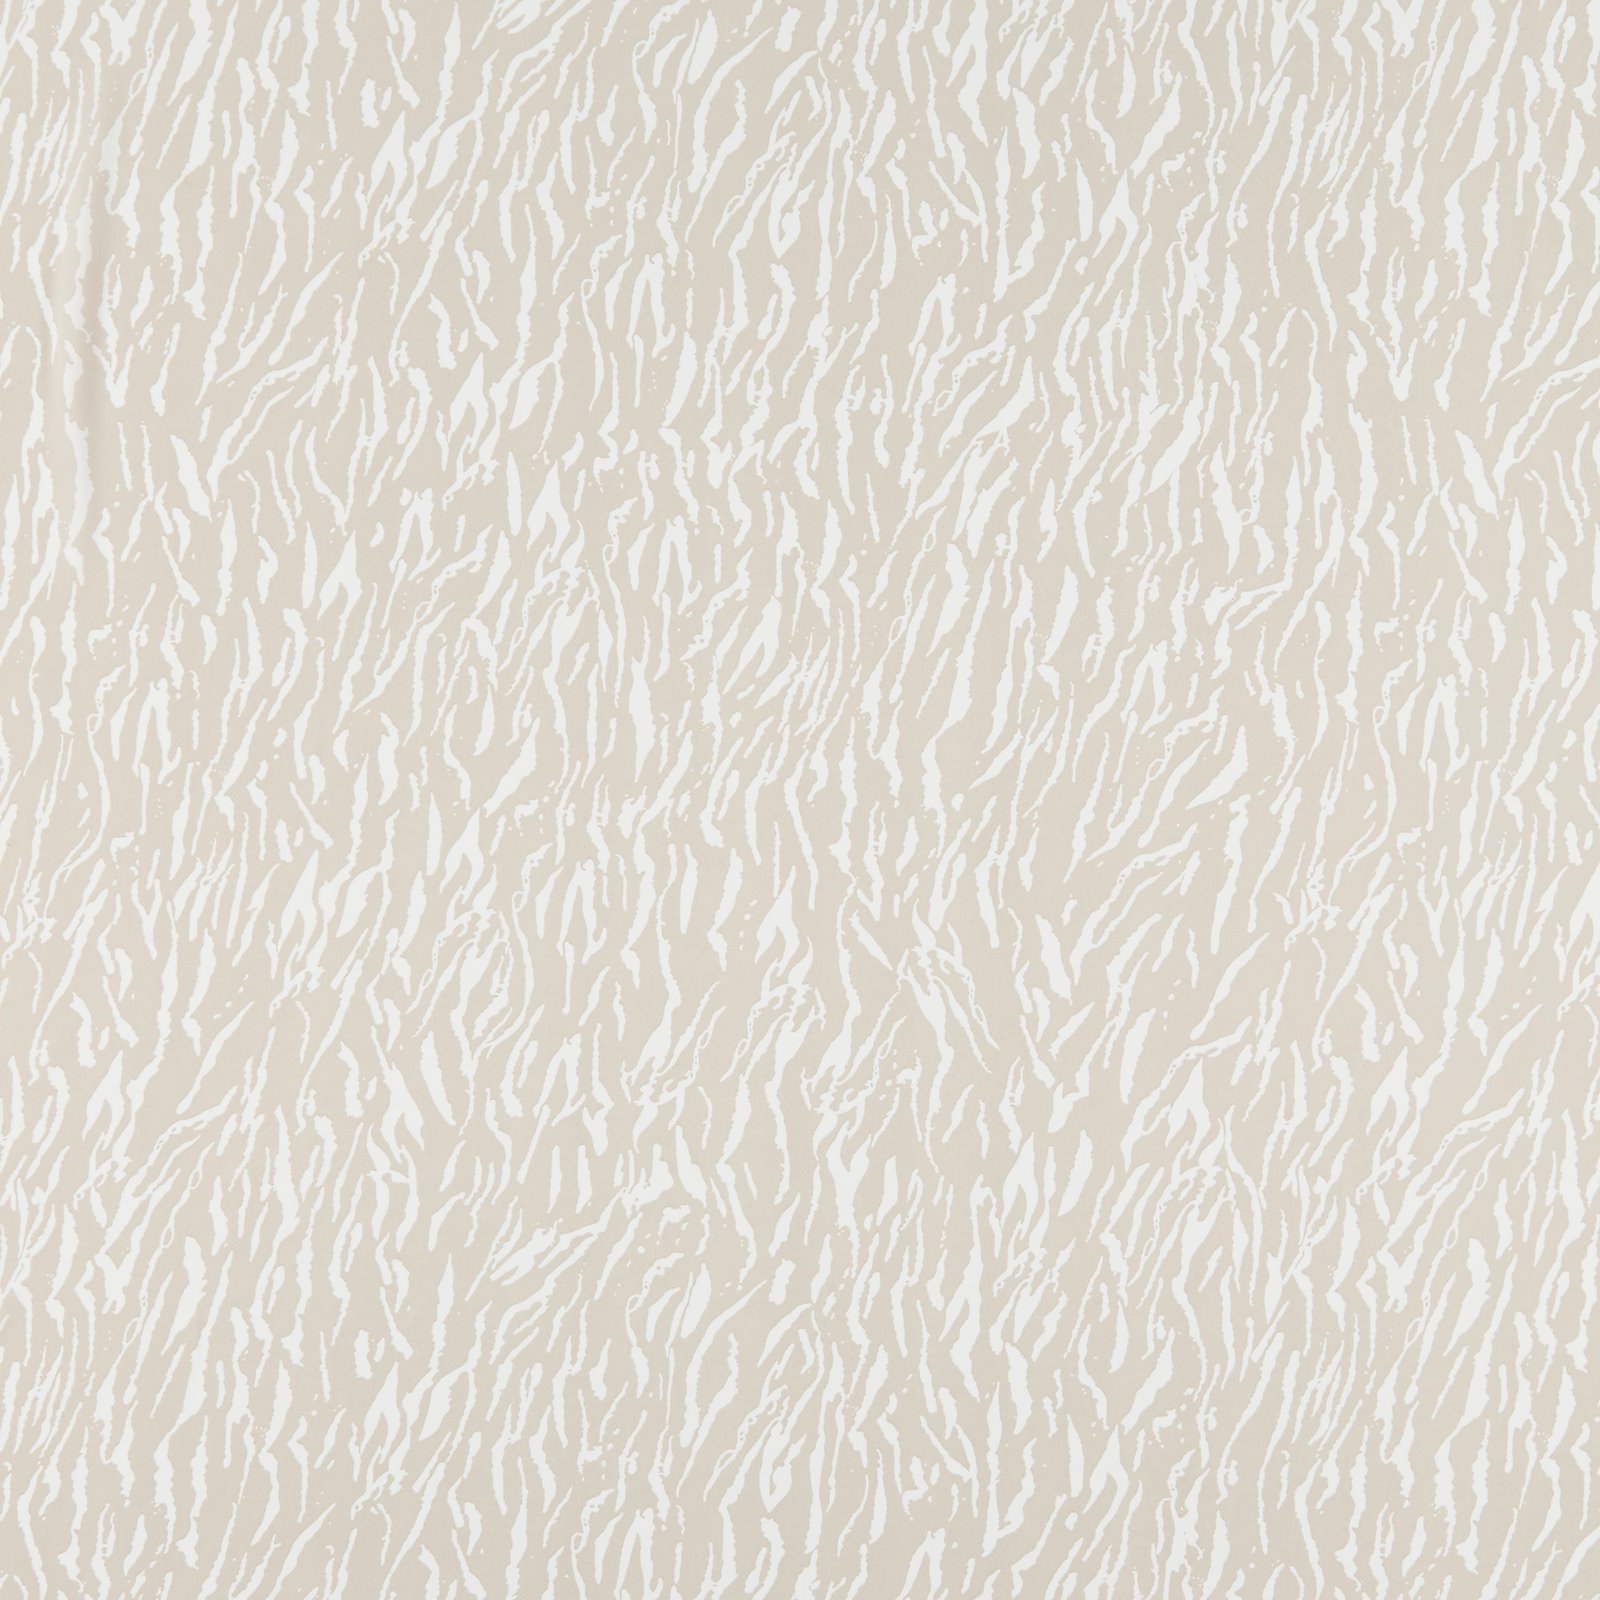 Chiffon w sand/white zebra print 631303_pack_sp